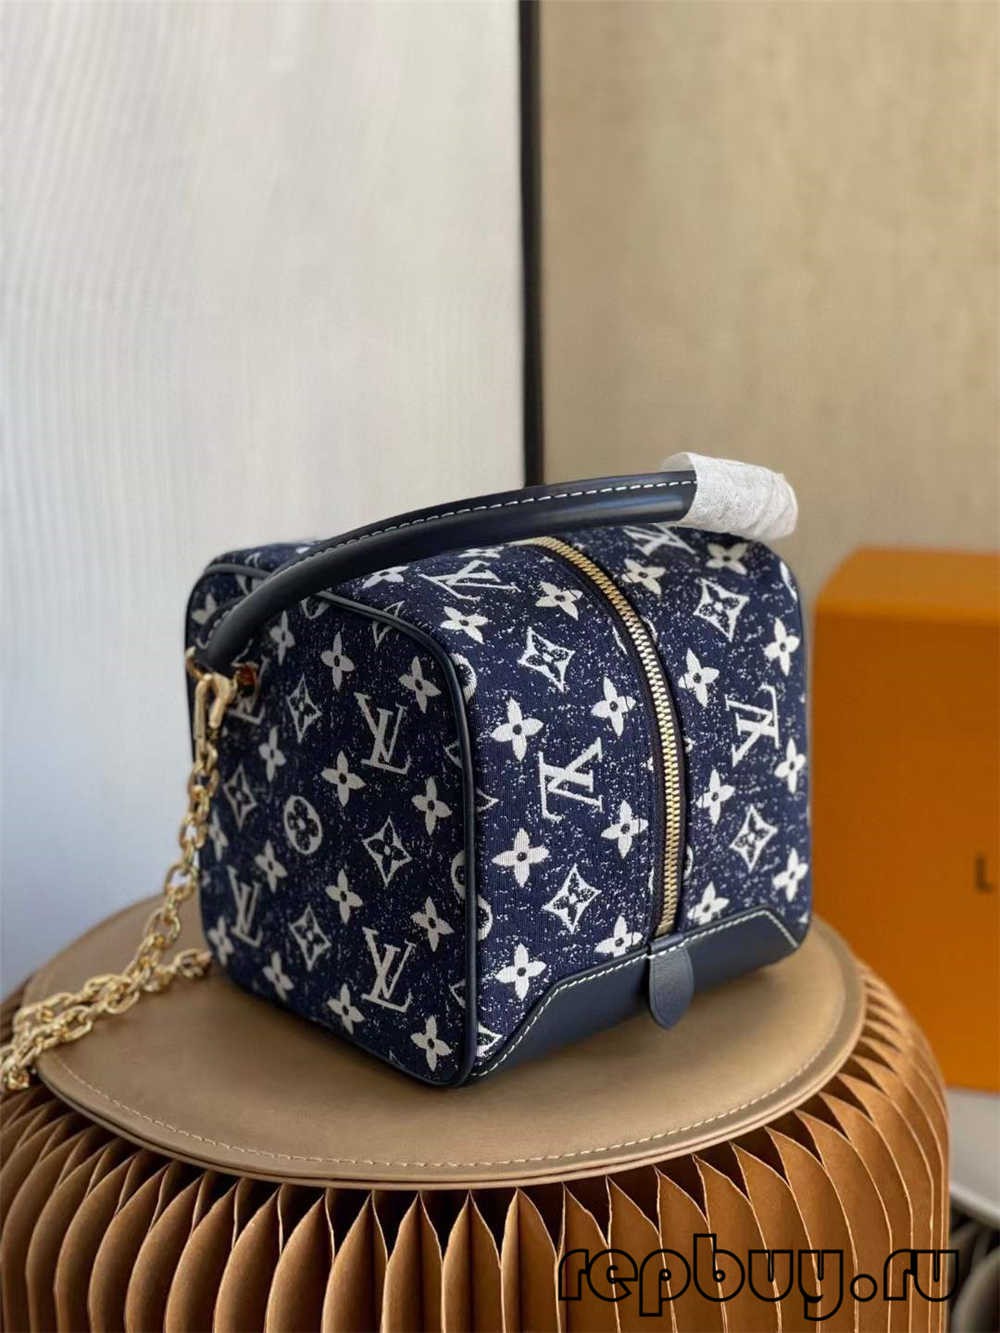 Louis Vuitton SQUARE bag M59611 بہترین کوالٹی ریپلیکا بیگ (2022 اپ ڈیٹ) - بہترین کوالٹی کا جعلی لوئس ووٹن بیگ آن لائن اسٹور، ریپلیکا ڈیزائنر بیگ آر یو